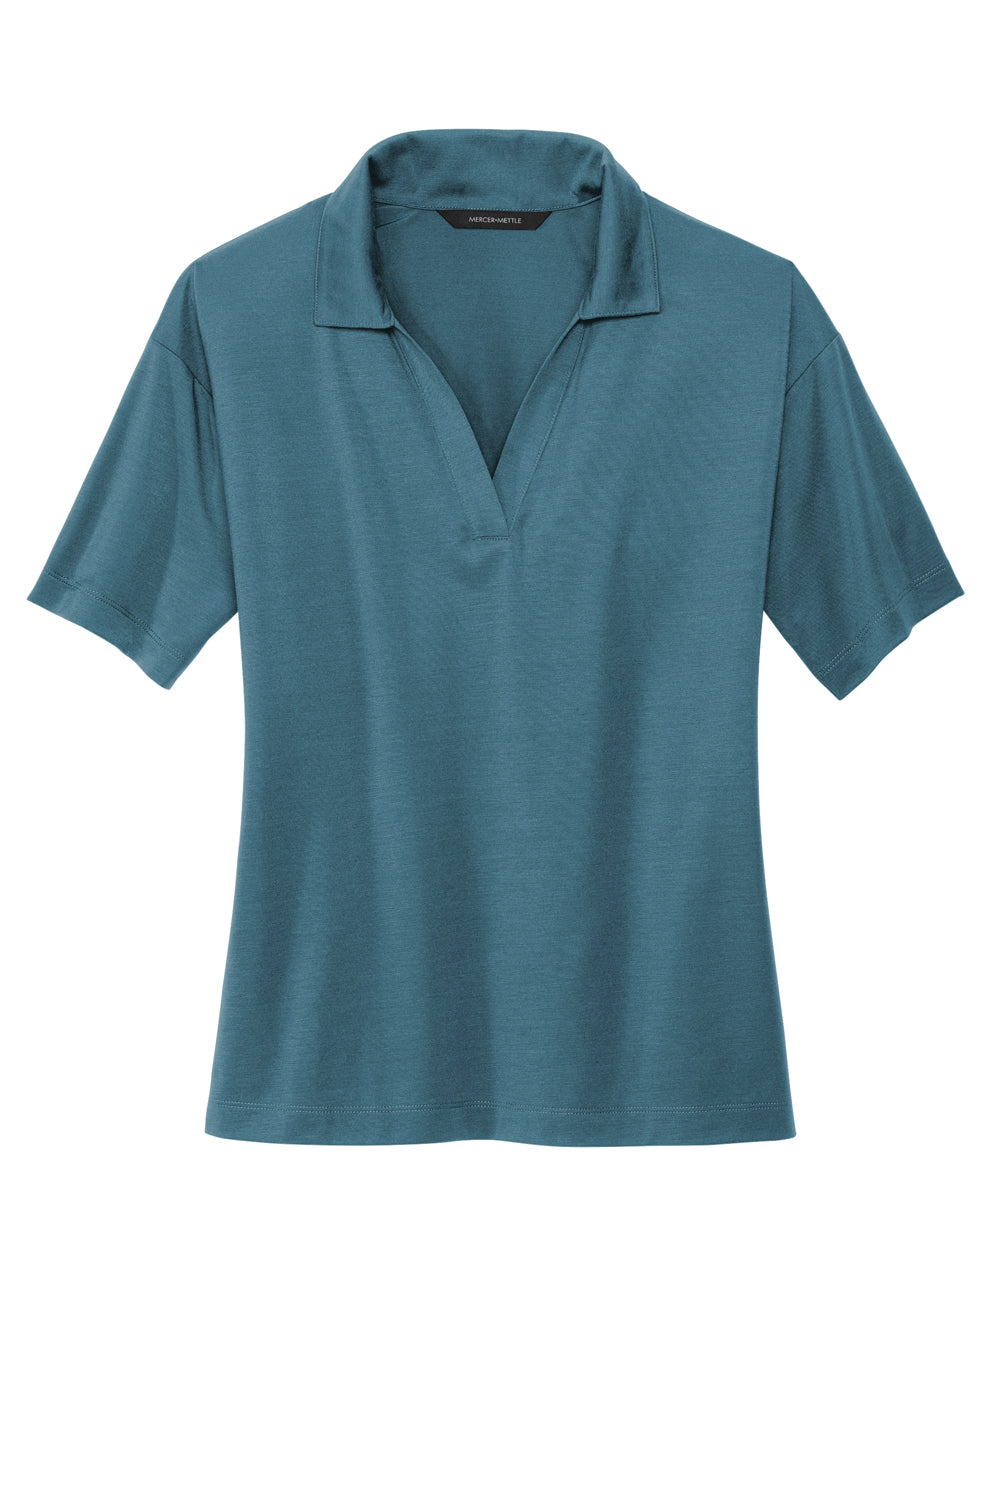 Mercer+Mettle Womens Moisture Wicking Short Sleeve Polo Shirt Parisian Blue Flat Front